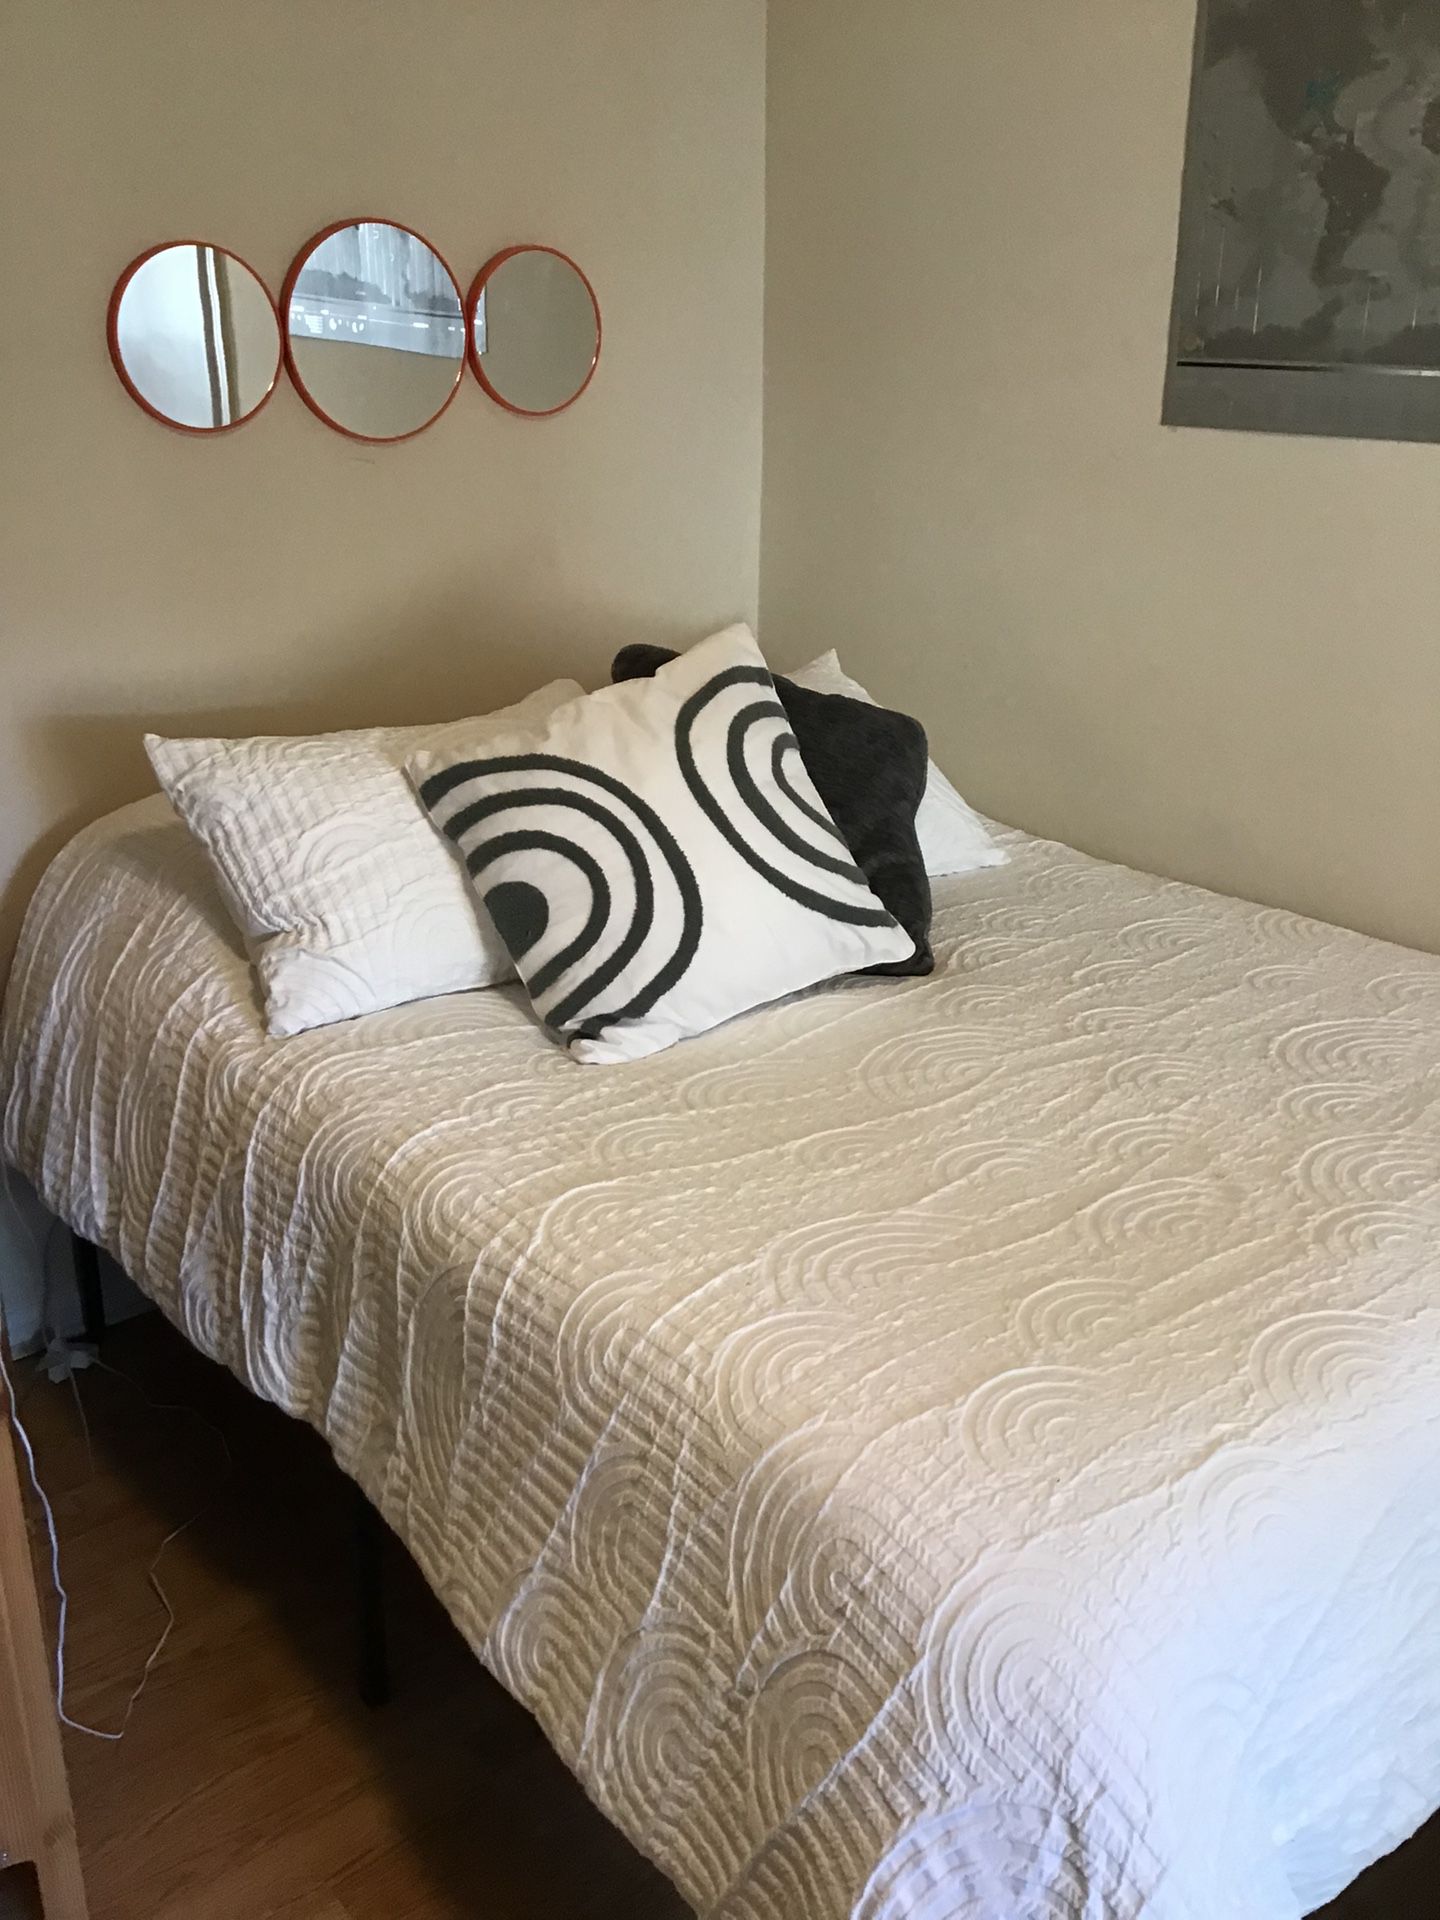 Full Sized Bed Frame-Must Go! Make an Offer 